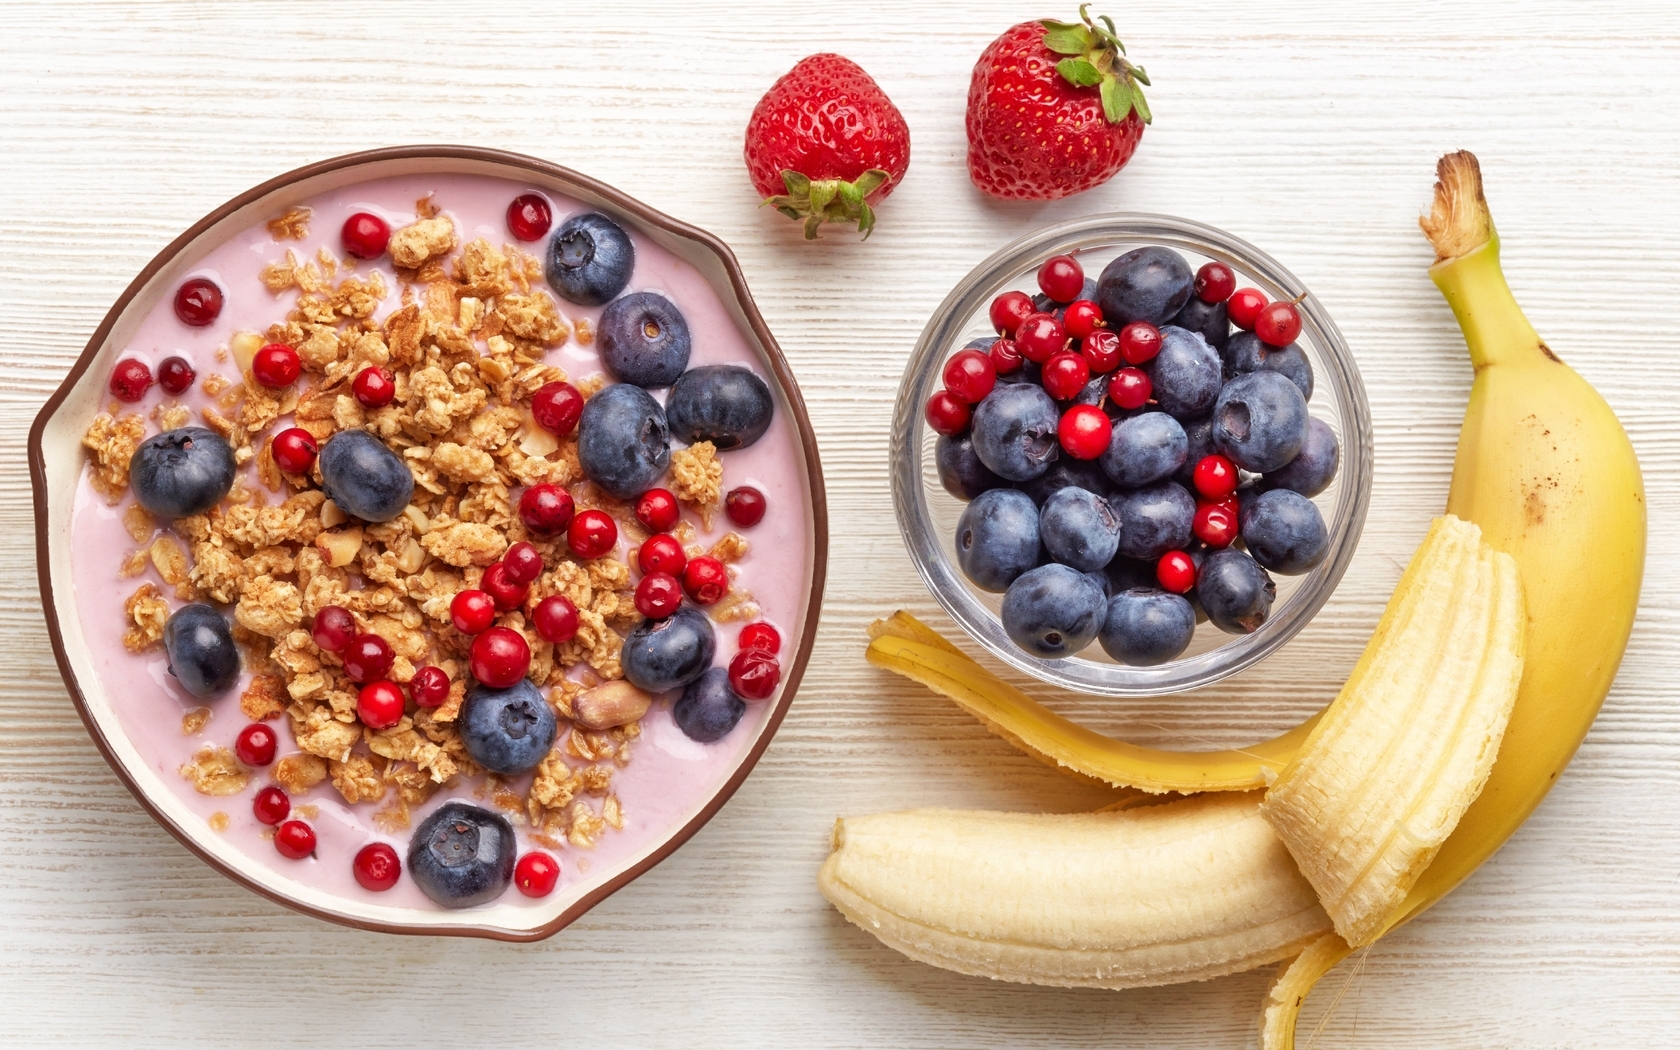 Картинка: Завтрак, йогурт, мюсли, ягоды, фрукты, банан, черника, виктория, десерт